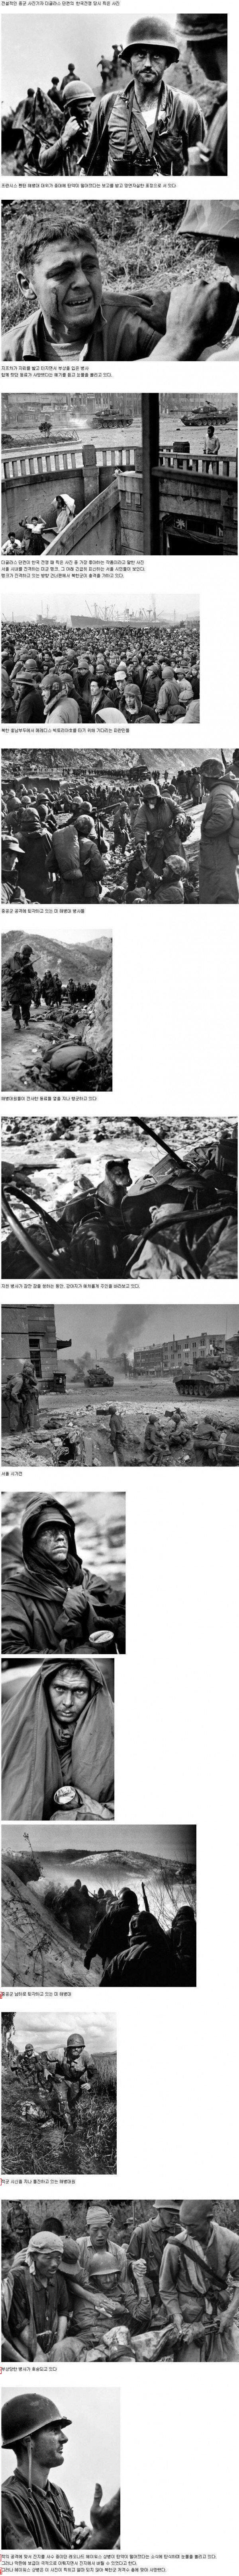 한국전쟁 당시 미 해병대 사진.jpg